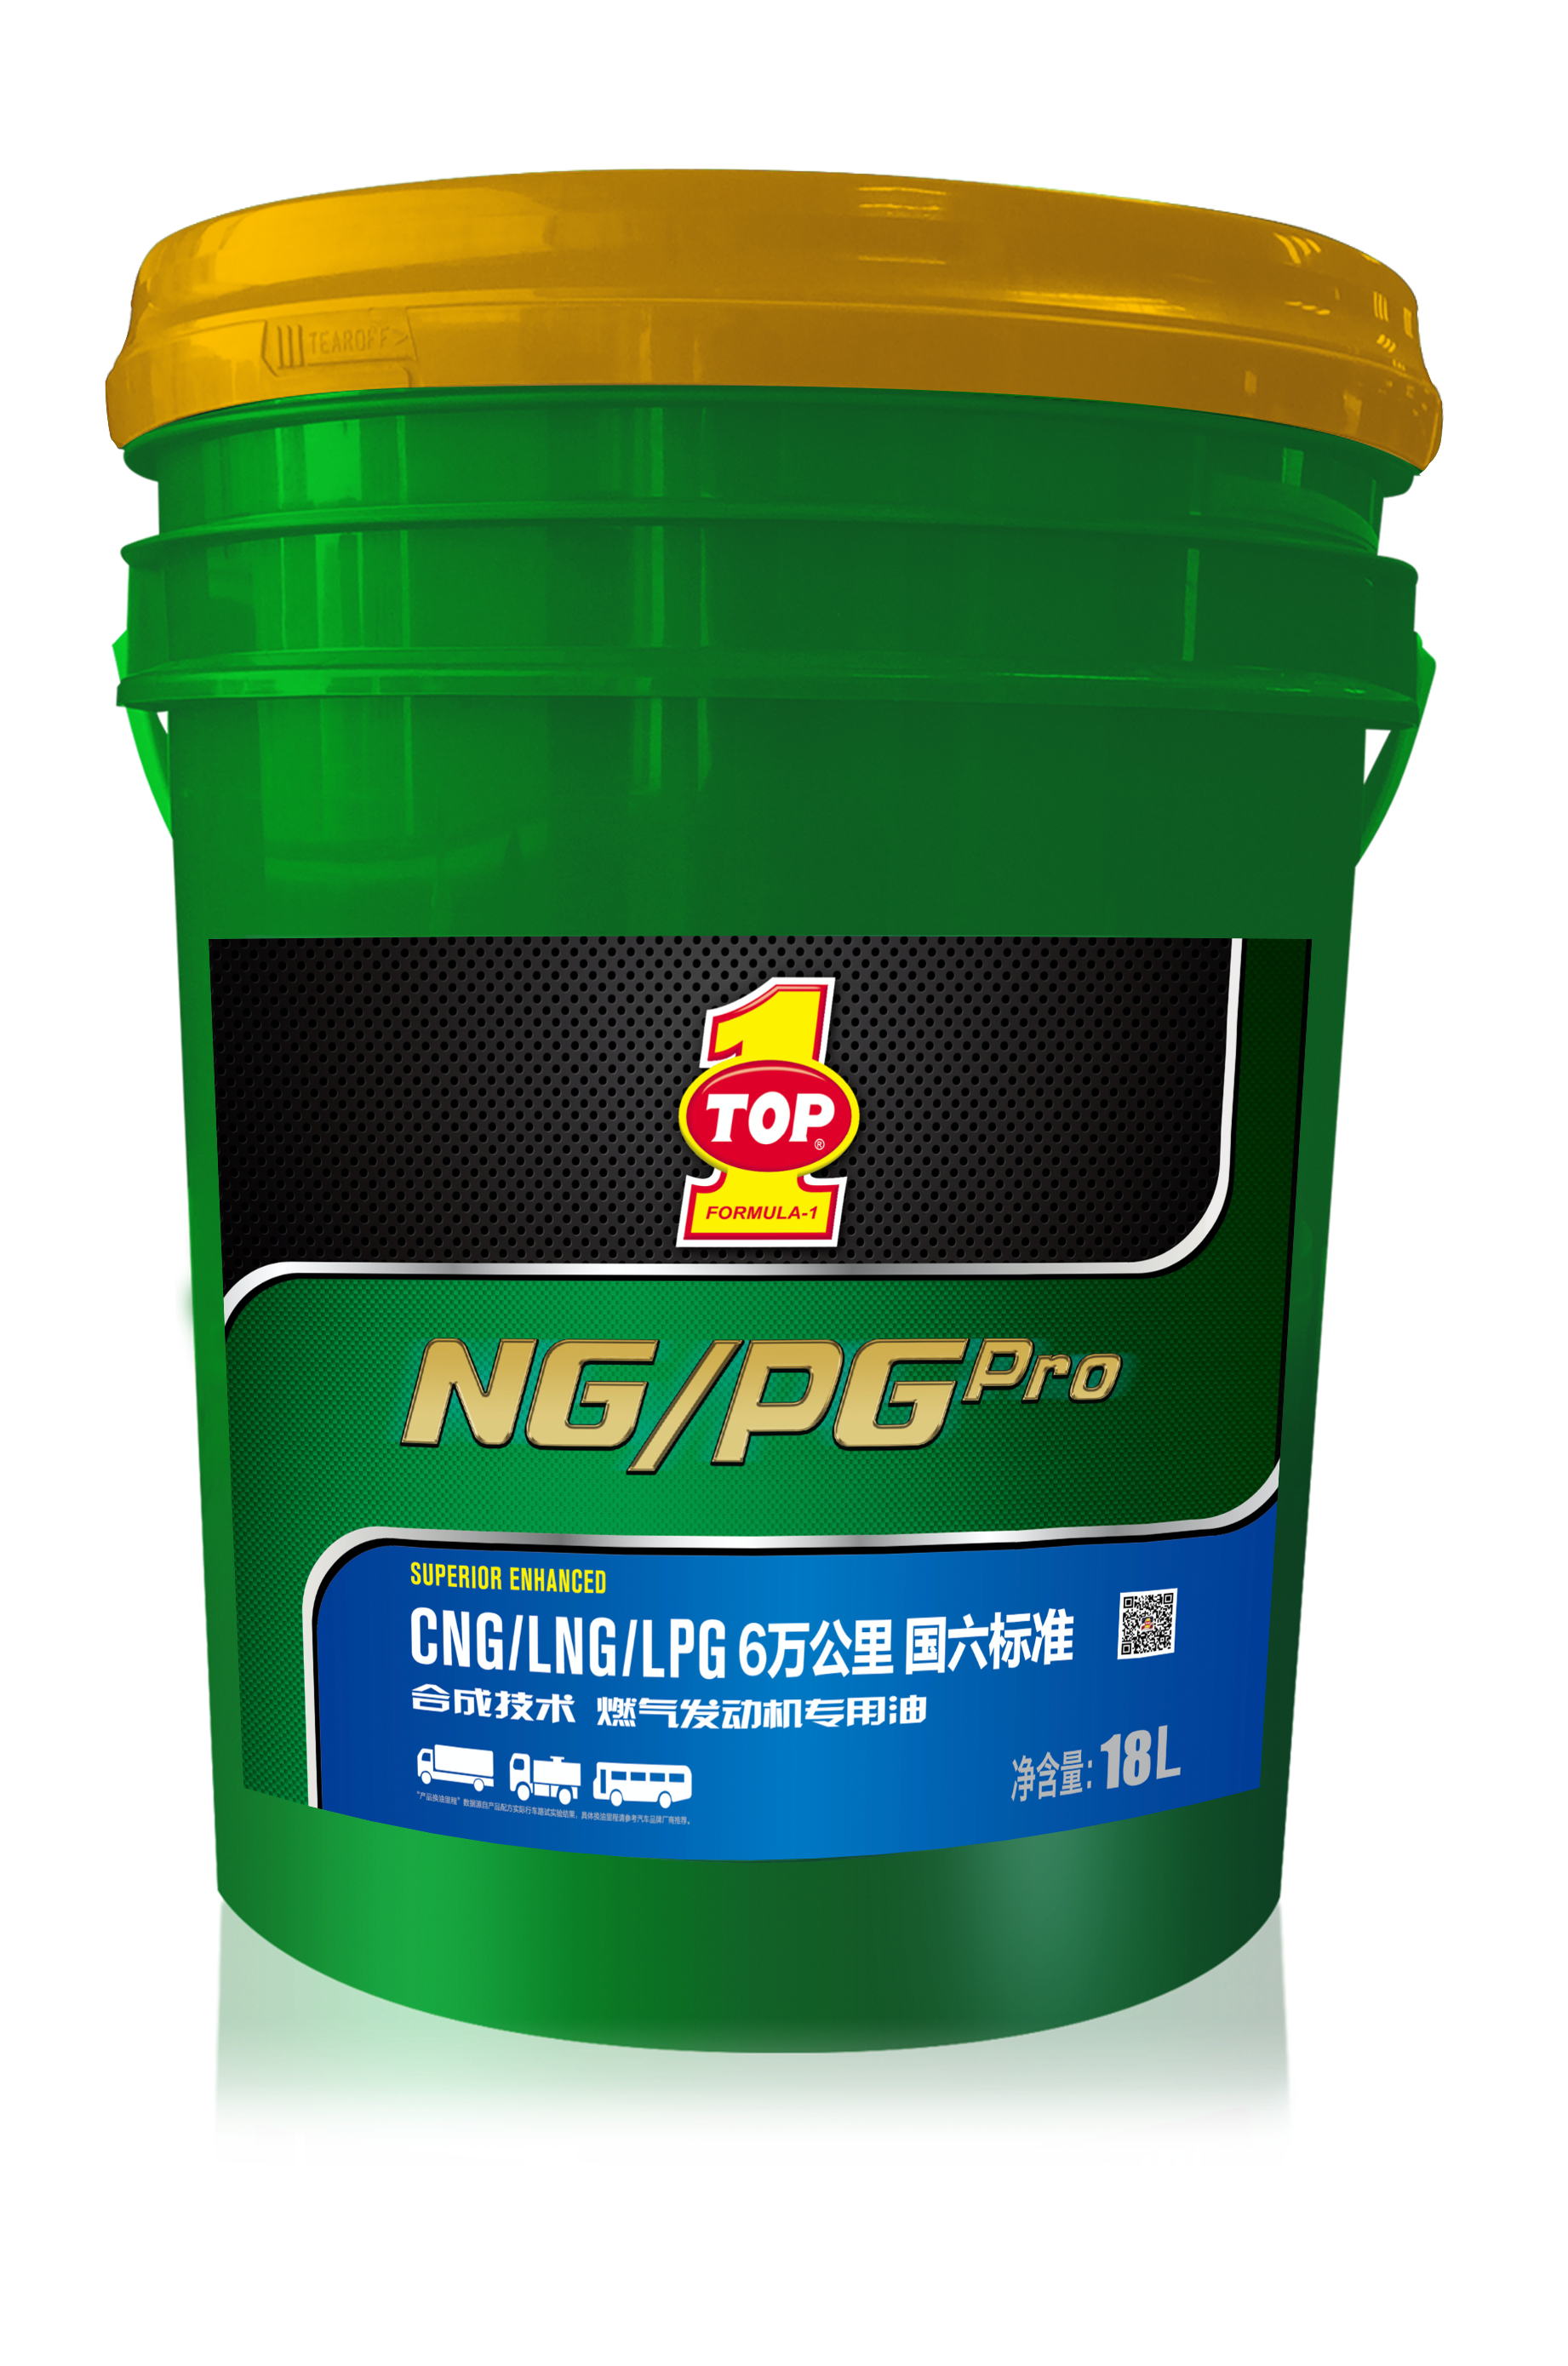 NG/PG Pro